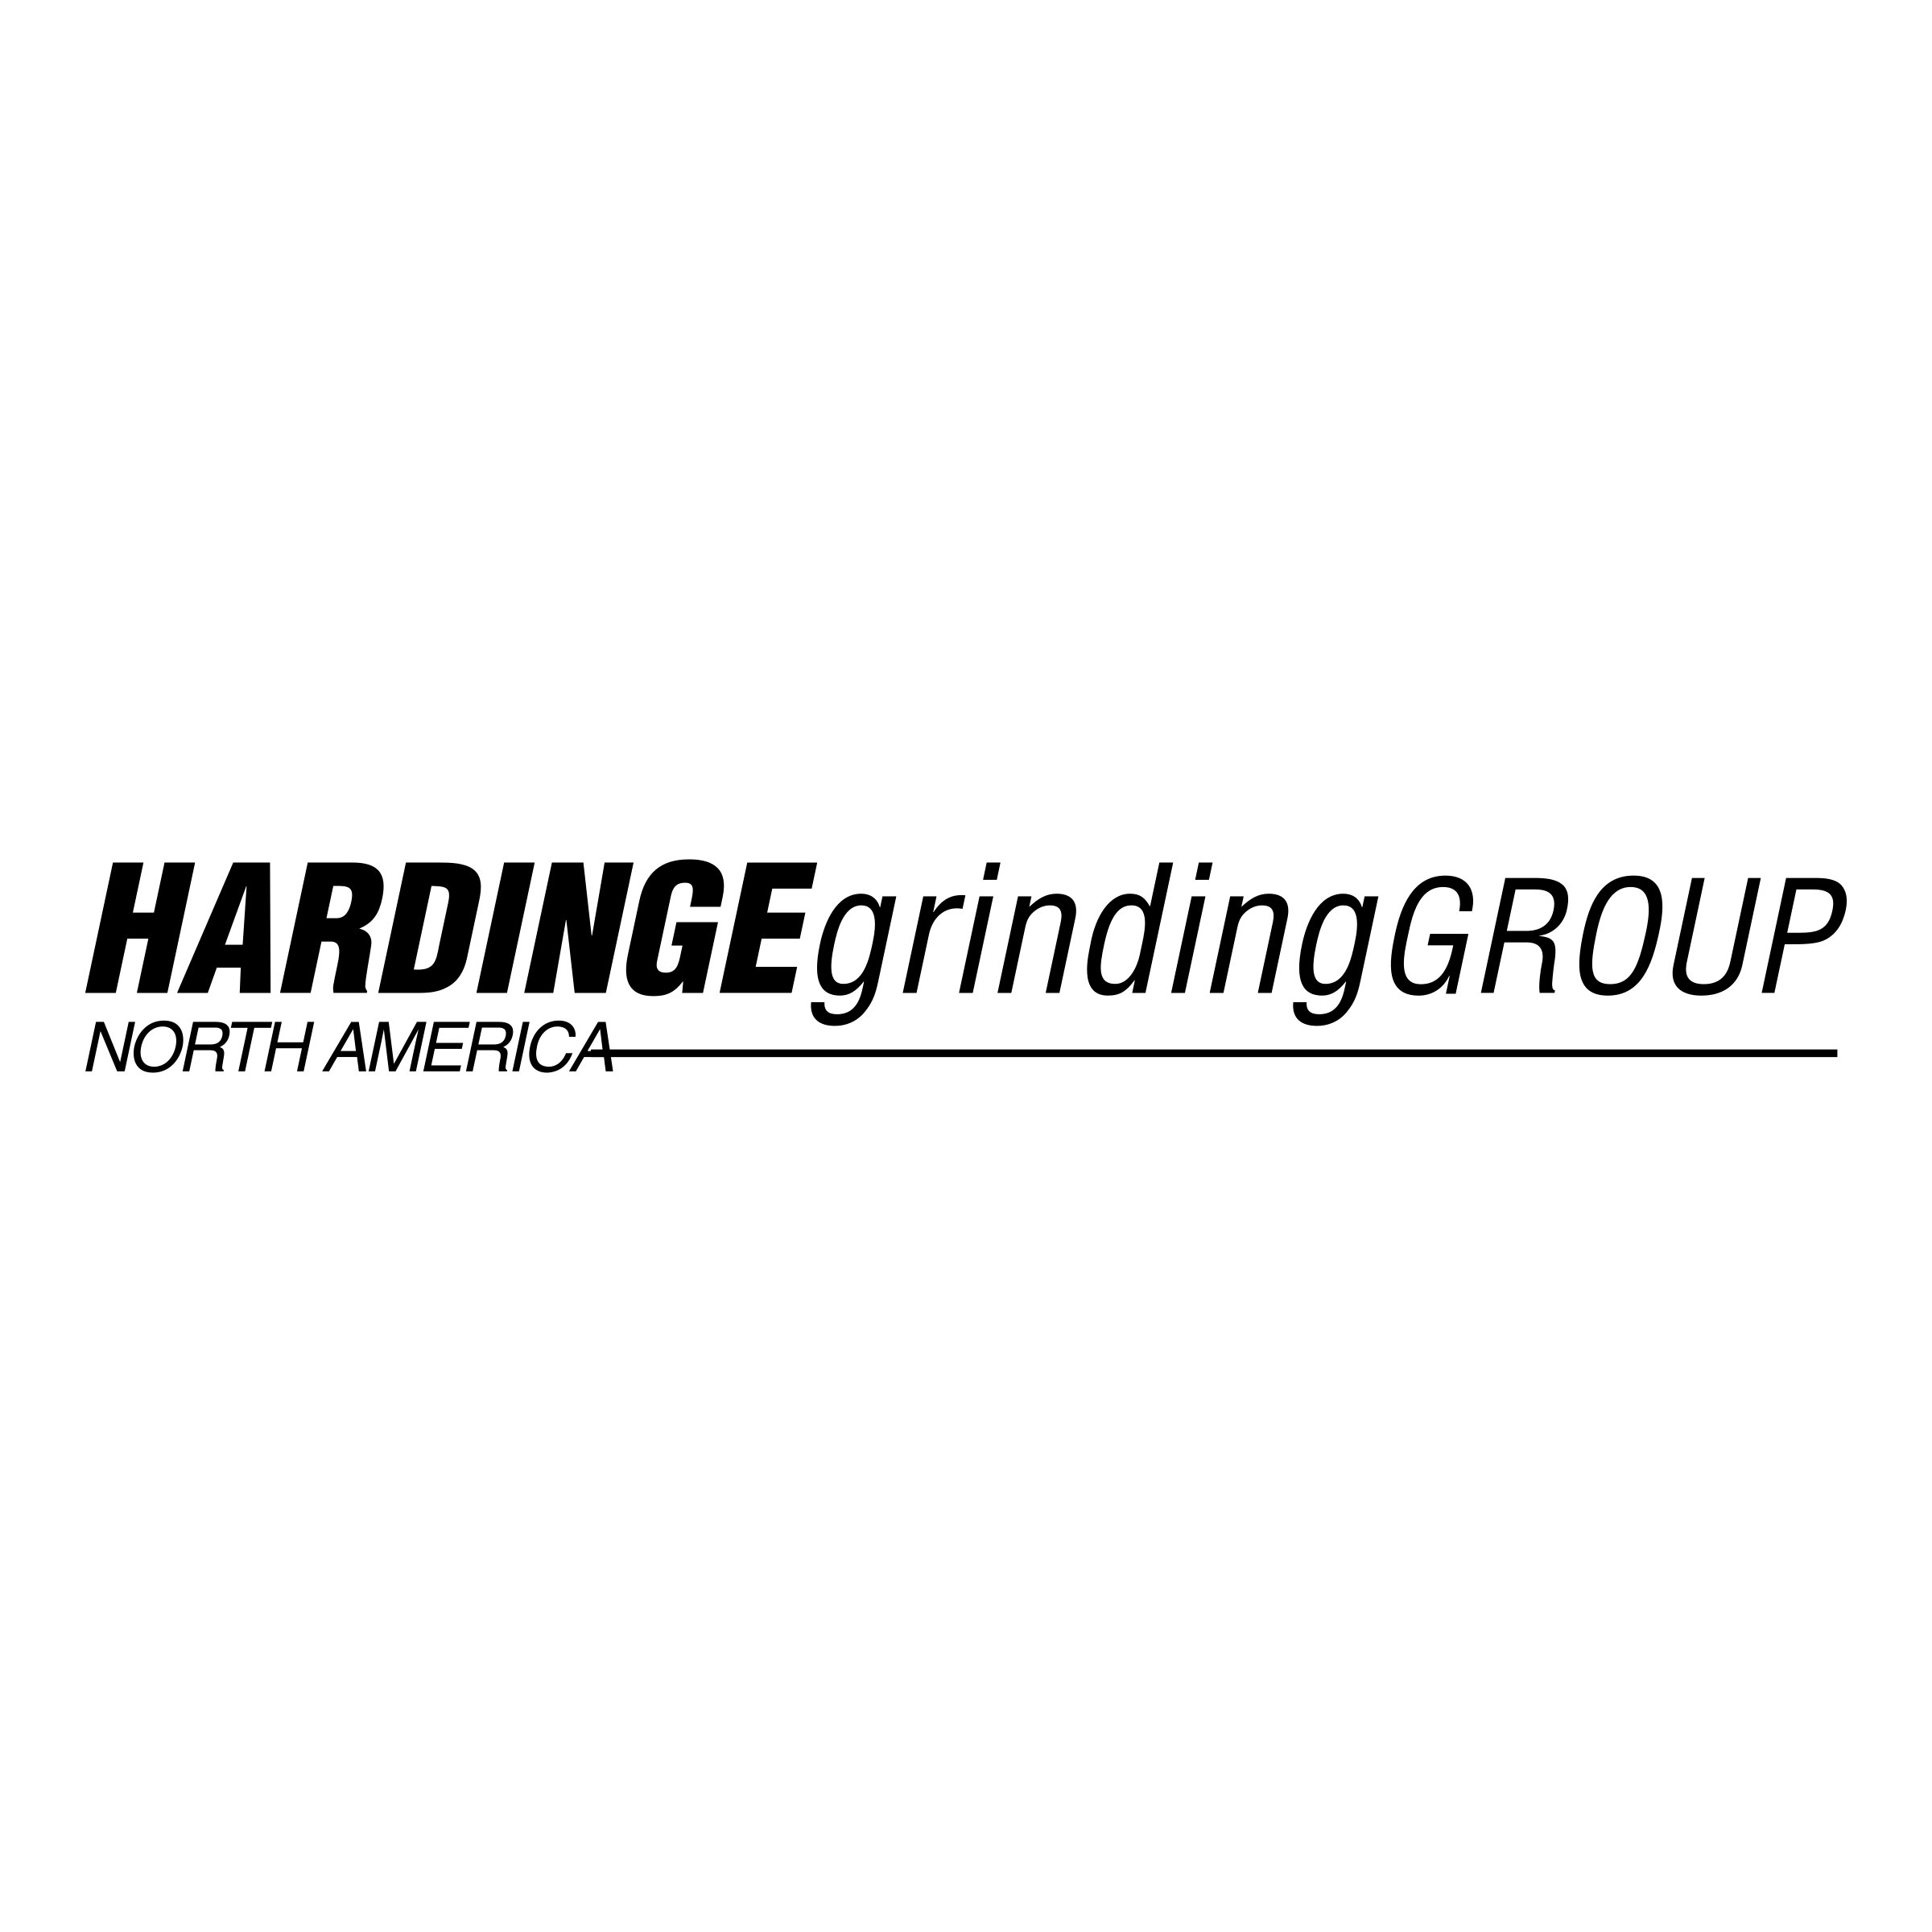 Hardinge Logo - Hardinge Grinding Group Logo PNG Transparent & SVG Vector - Freebie ...